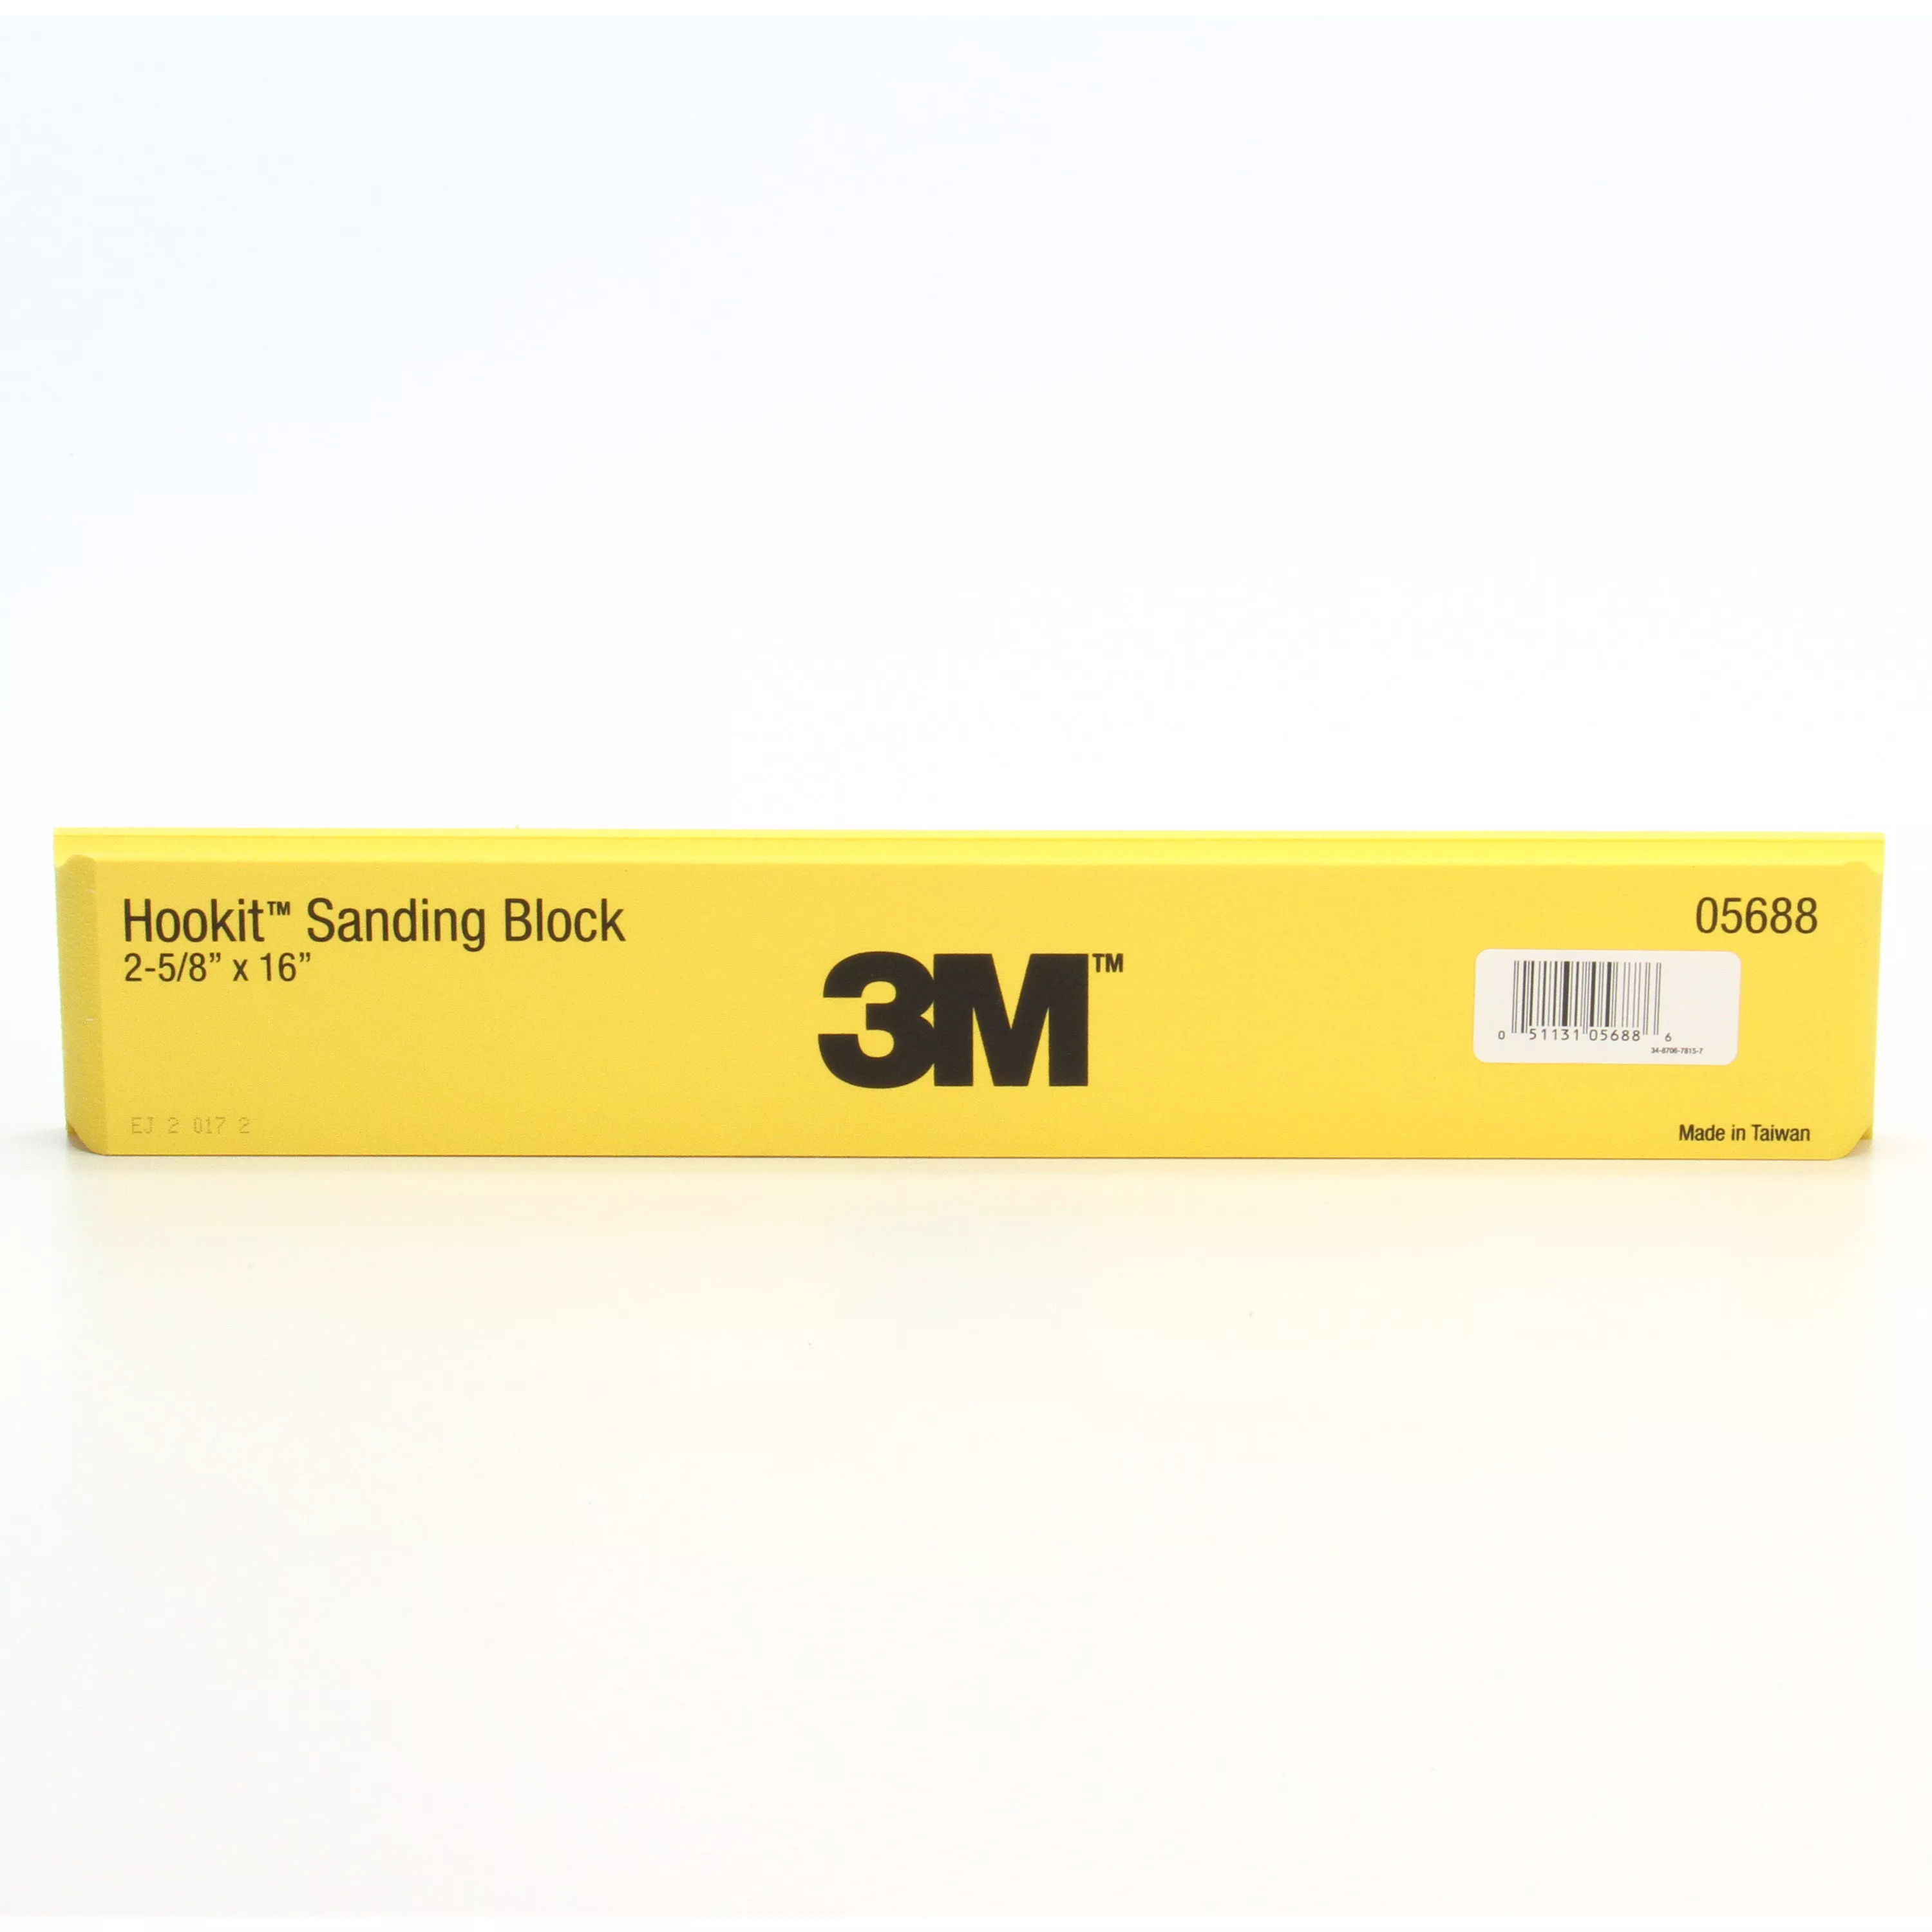 3M™ Hookit™ Sanding Block, 05688, 1-1/2 in X 2-5/8 in X 16 in, 8 per
case